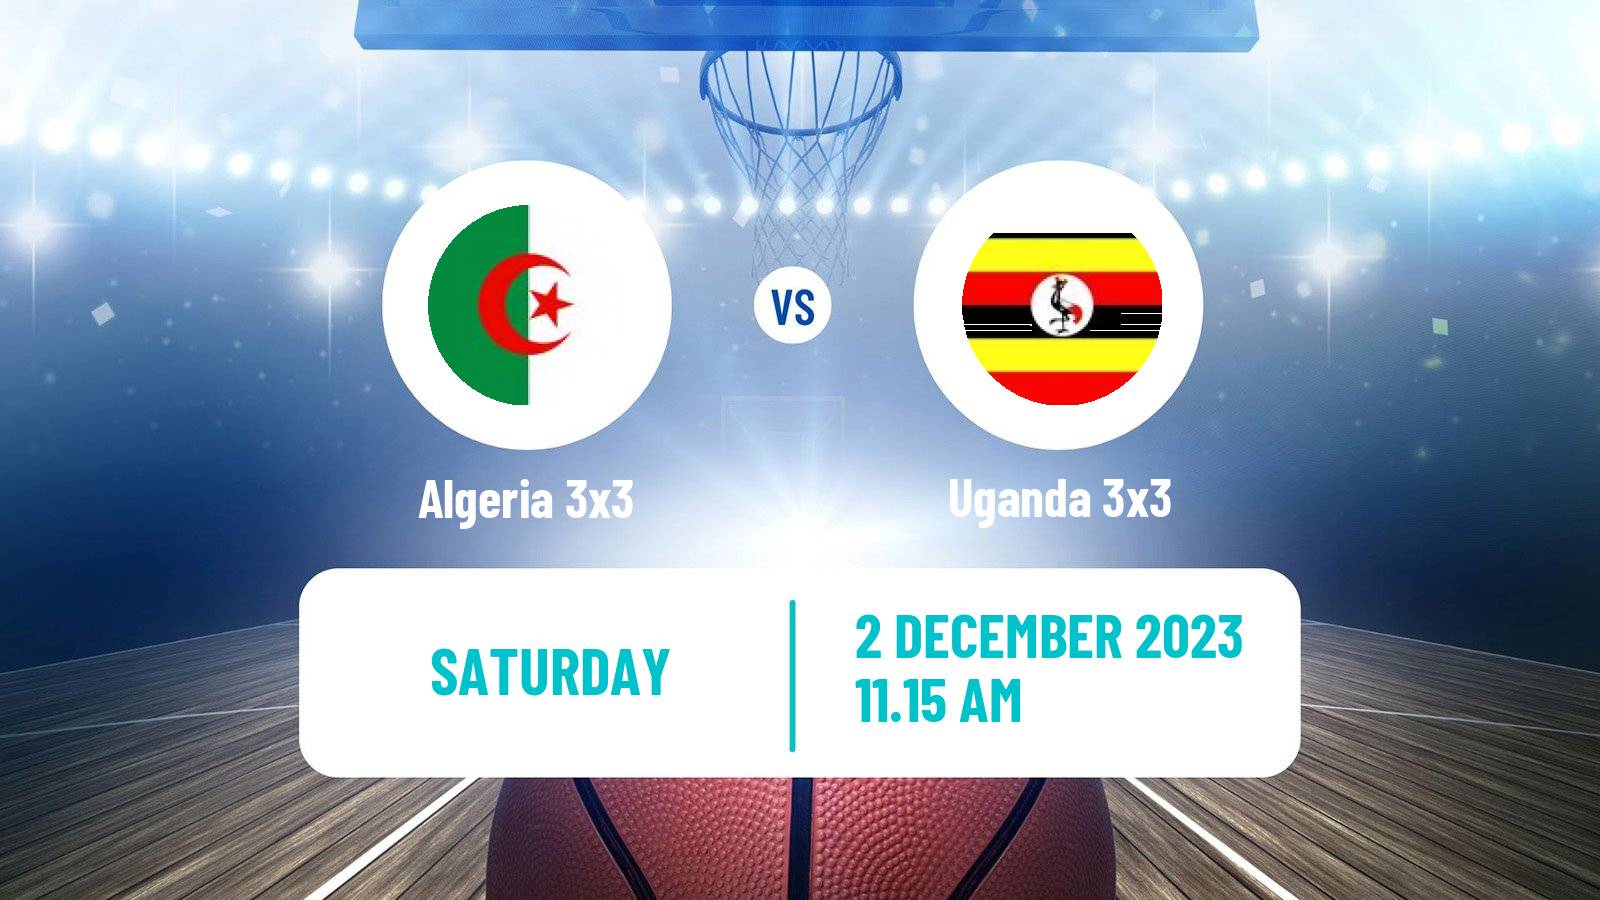 Basketball Africa Cup 3x3 Algeria 3x3 - Uganda 3x3